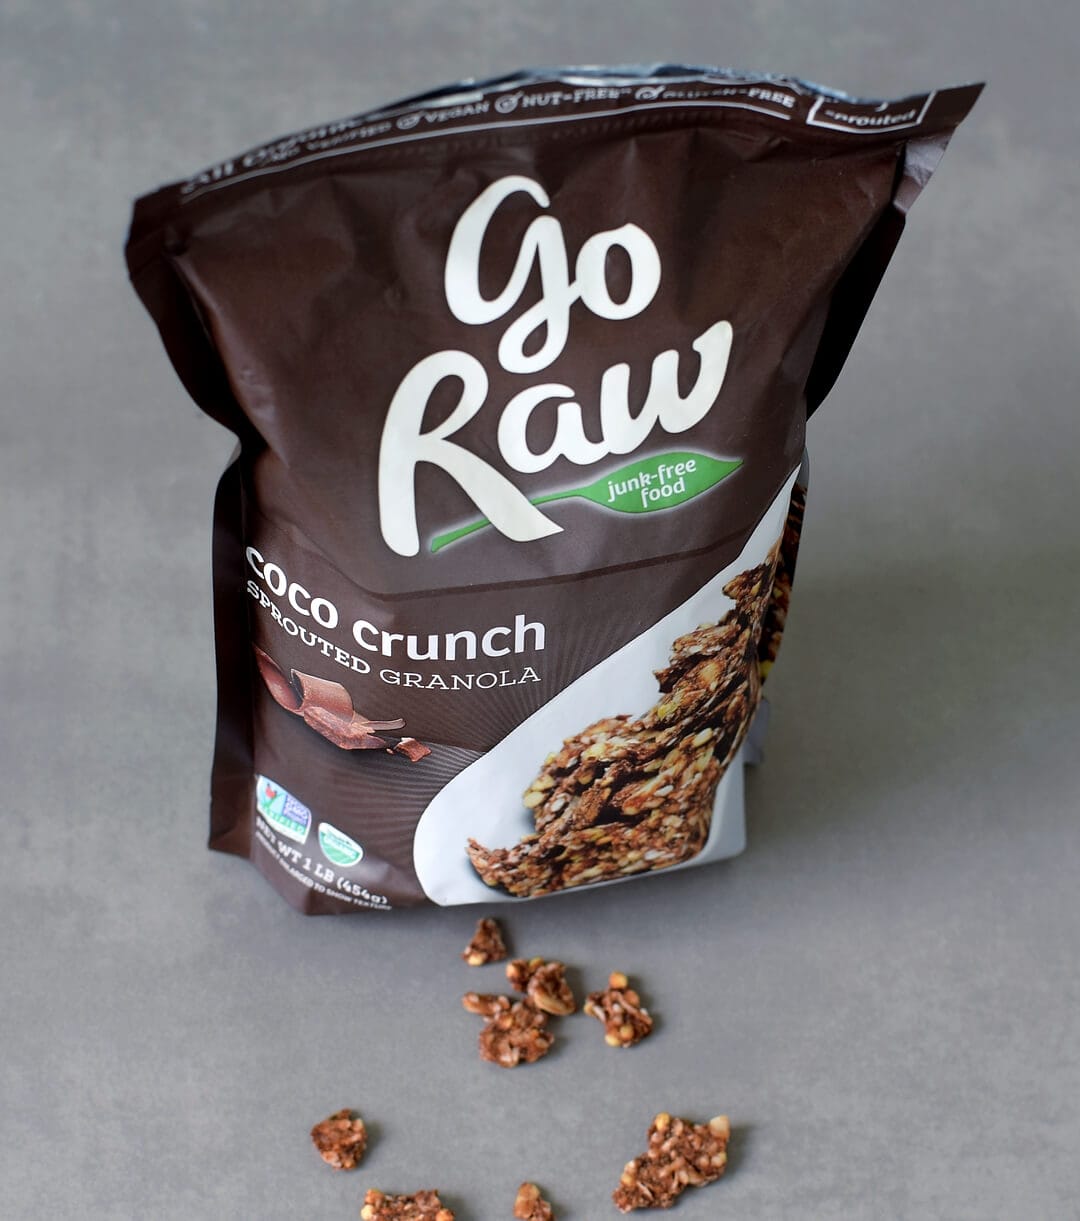 Go Raw coco crunch